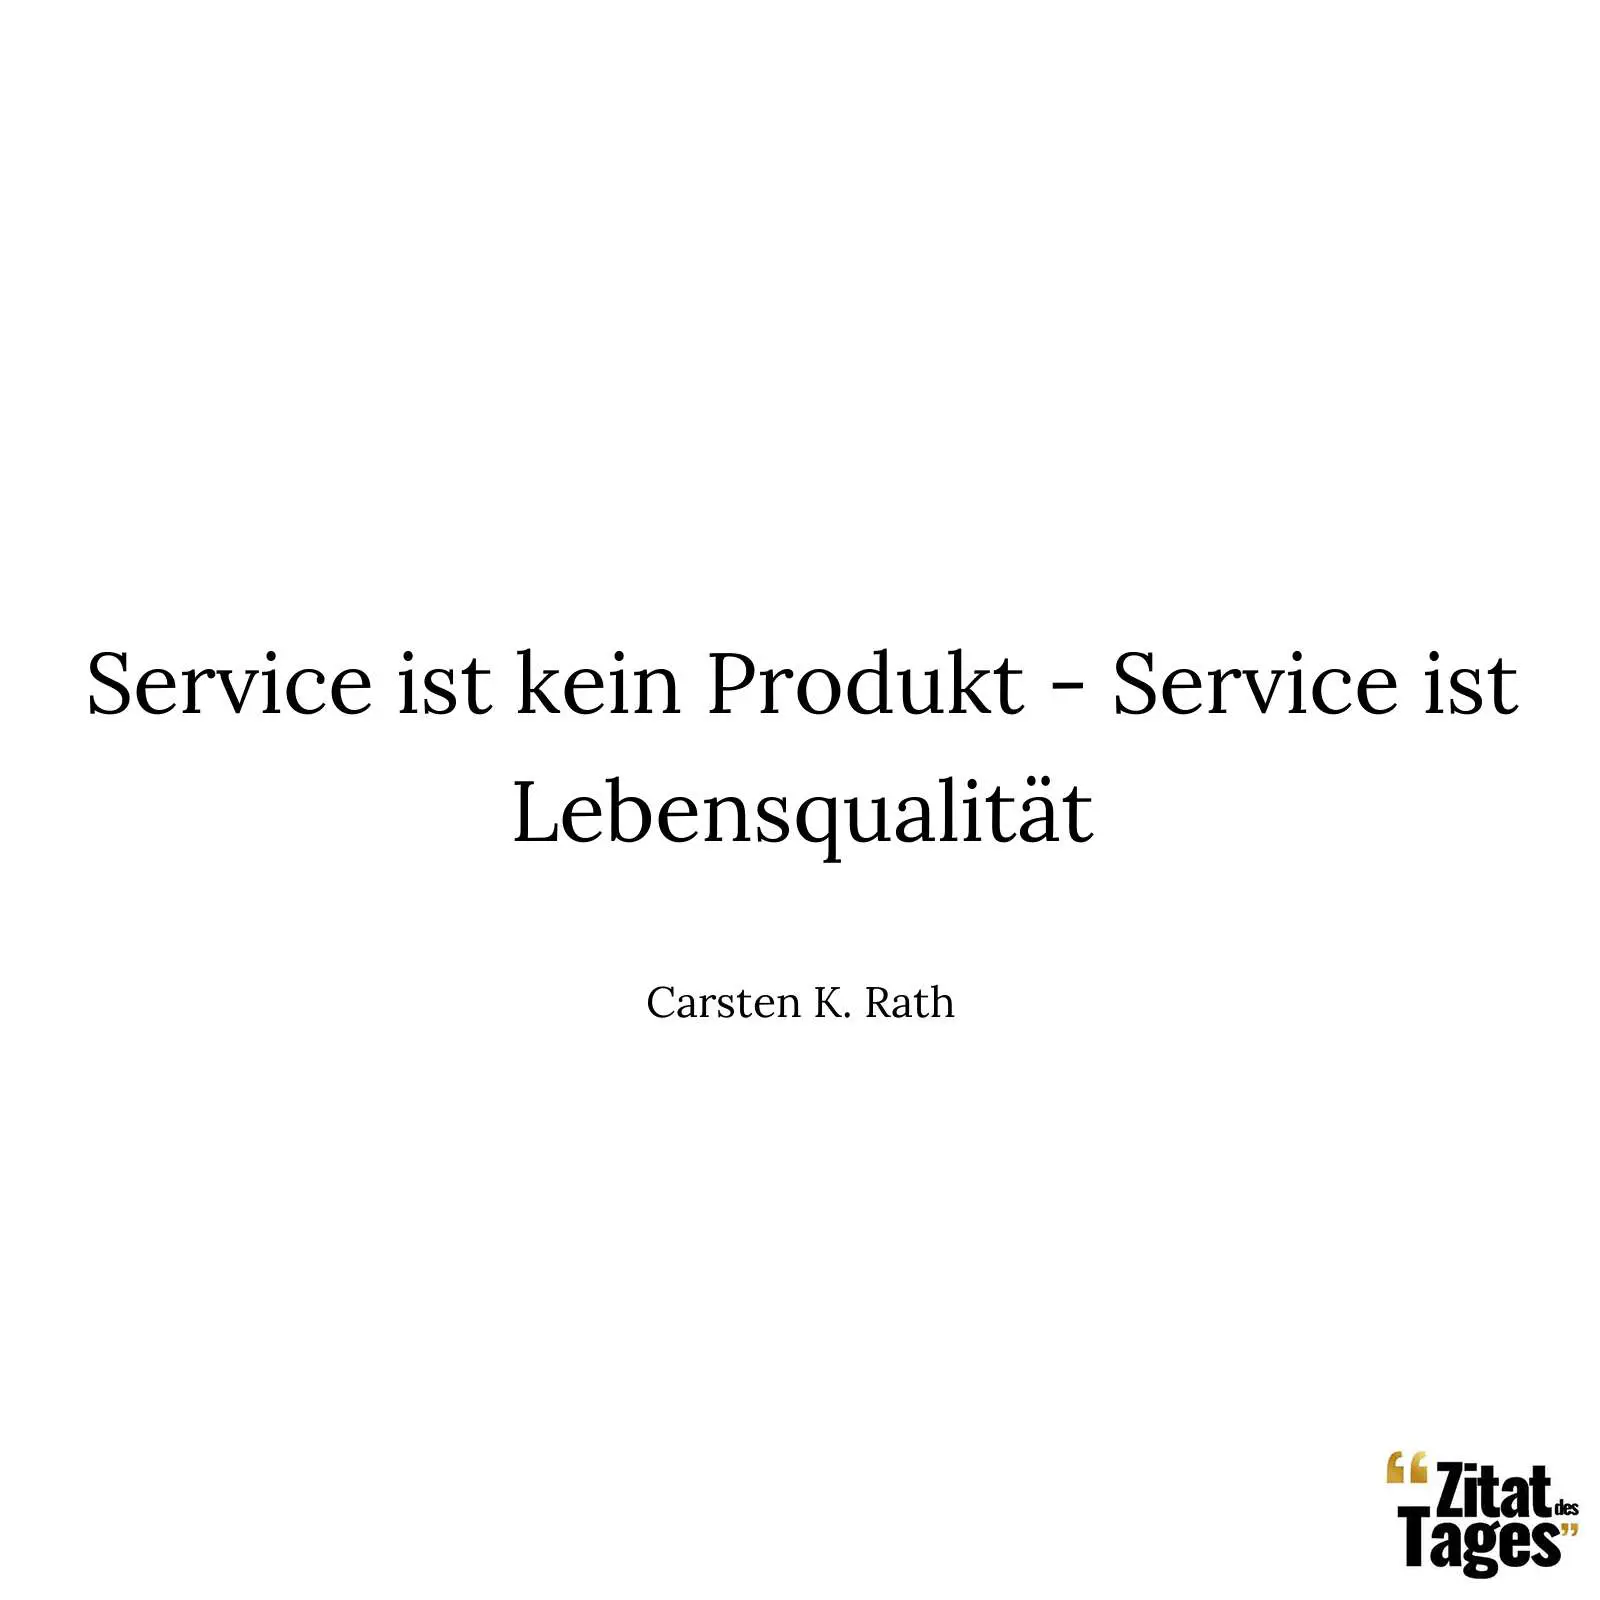 Service ist kein Produkt - Service ist Lebensqualität - Carsten K. Rath